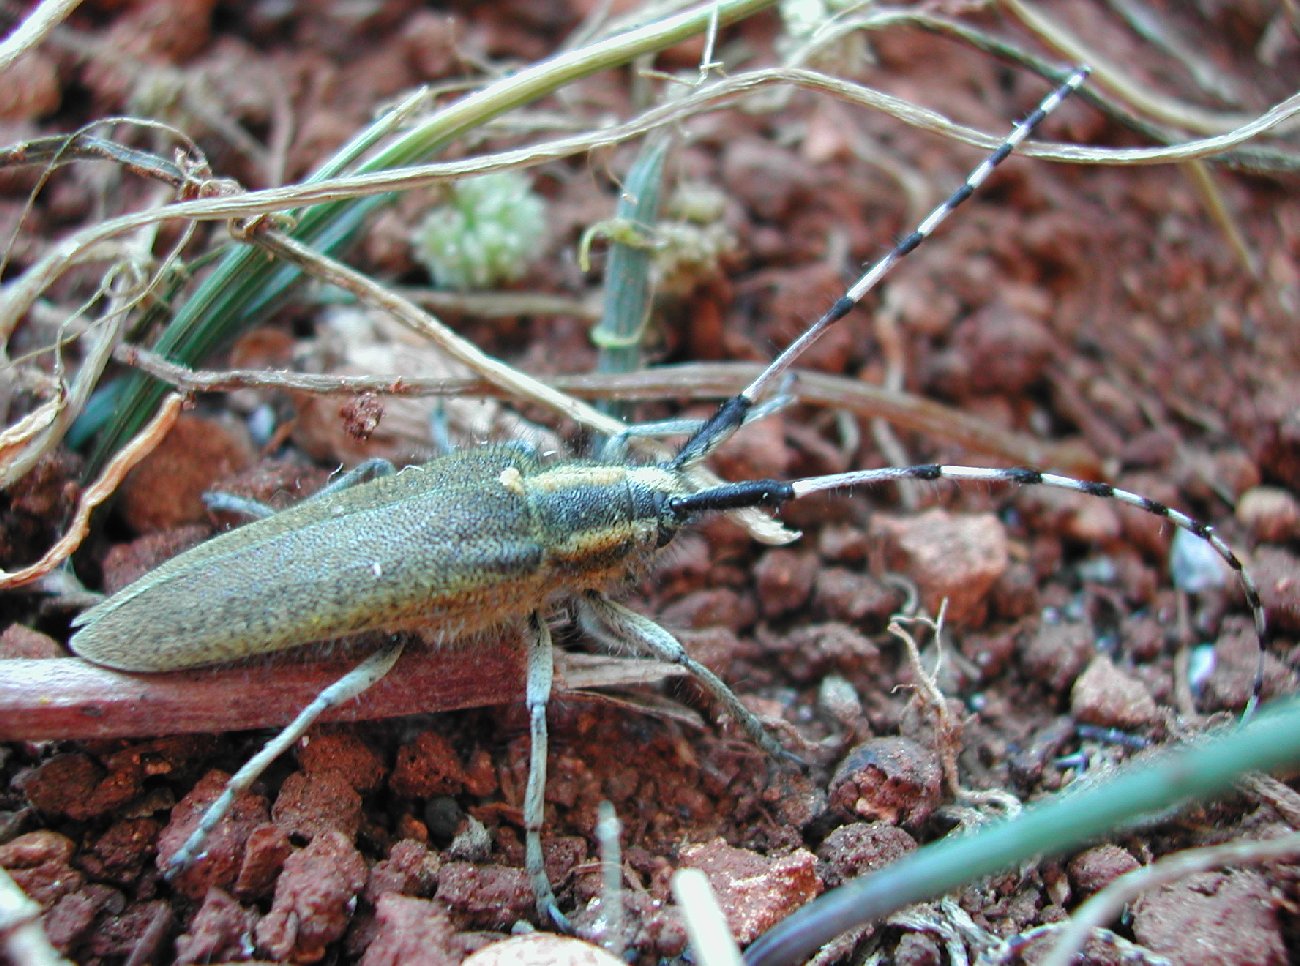 Agapanthia asphodeli (Coleoptera, Cerambycidae)